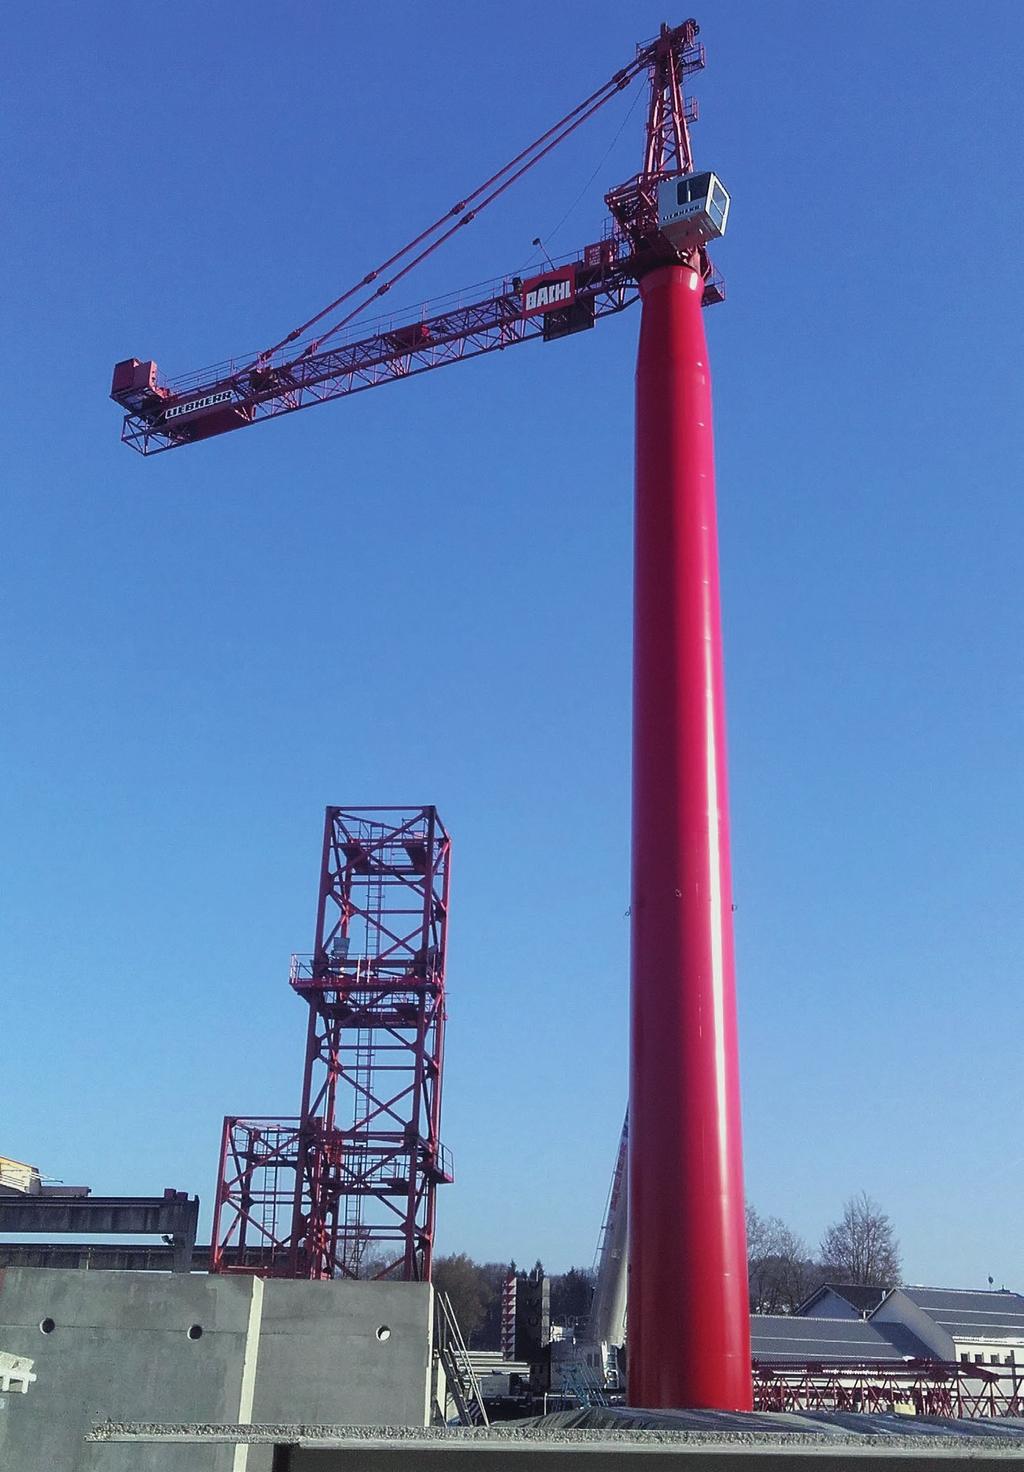 15 Der von der Ferne schon sichtbare Lagerplatzkran Liebherr 1250 HC auf dem Firmengelände der Firmengruppe Bachl hat einen neuen Turm bekommen. Der langjährige Kunde, die Karl Bachl GmbH & Co.